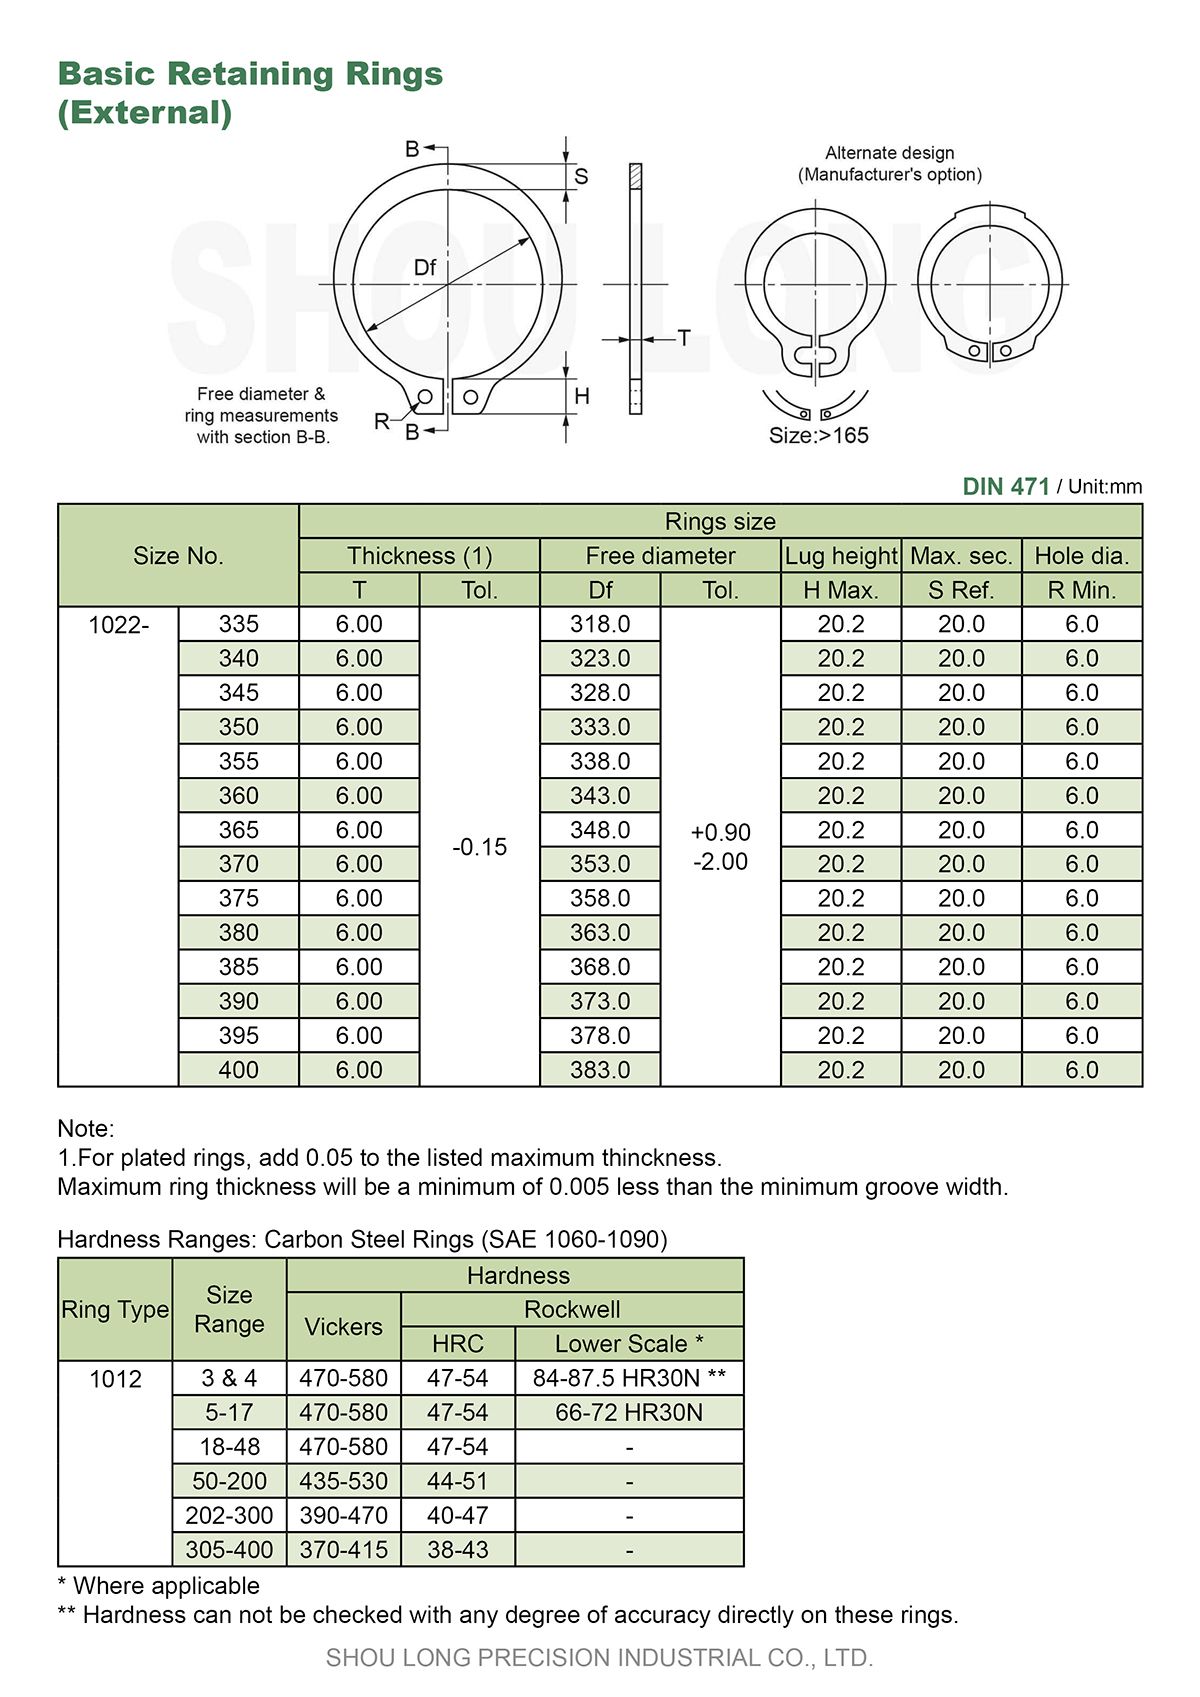 ข้อมูลของวงแหวนรัดพื้นฐานเมตริกสำหรับแกน DIN471-7